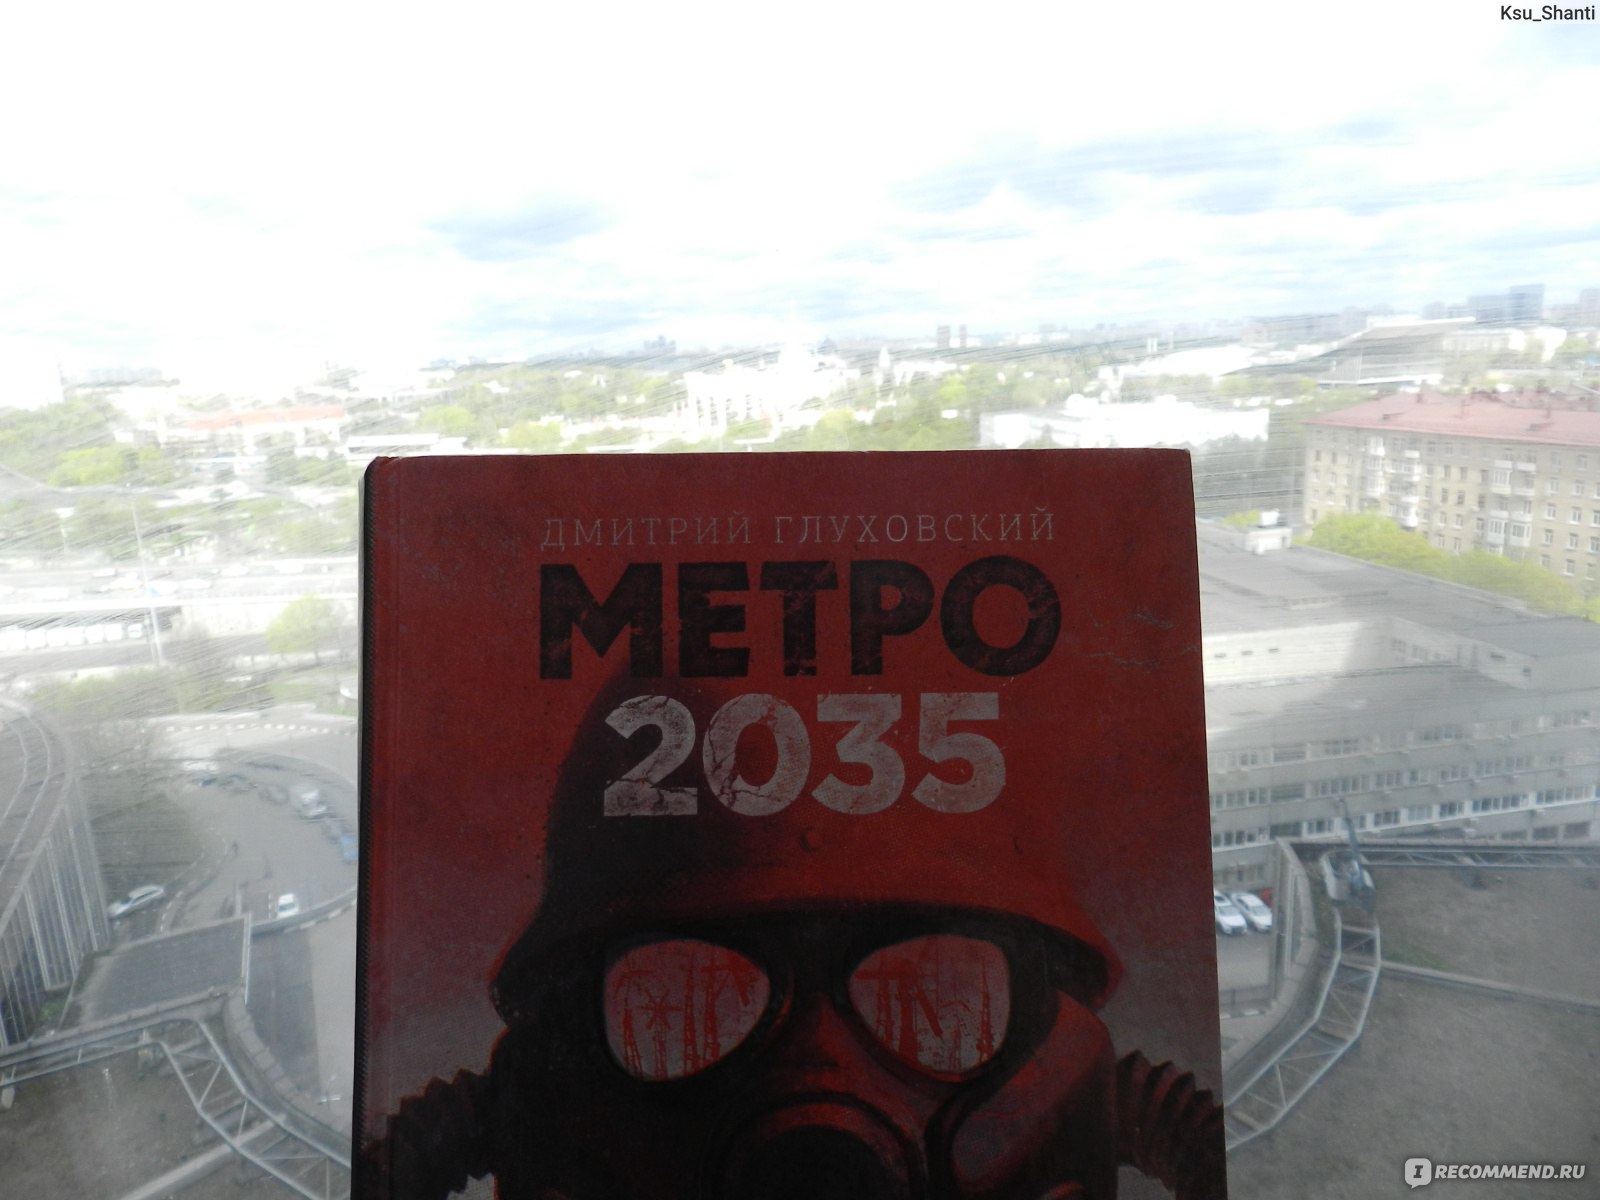 ВДНХ Метро 2035